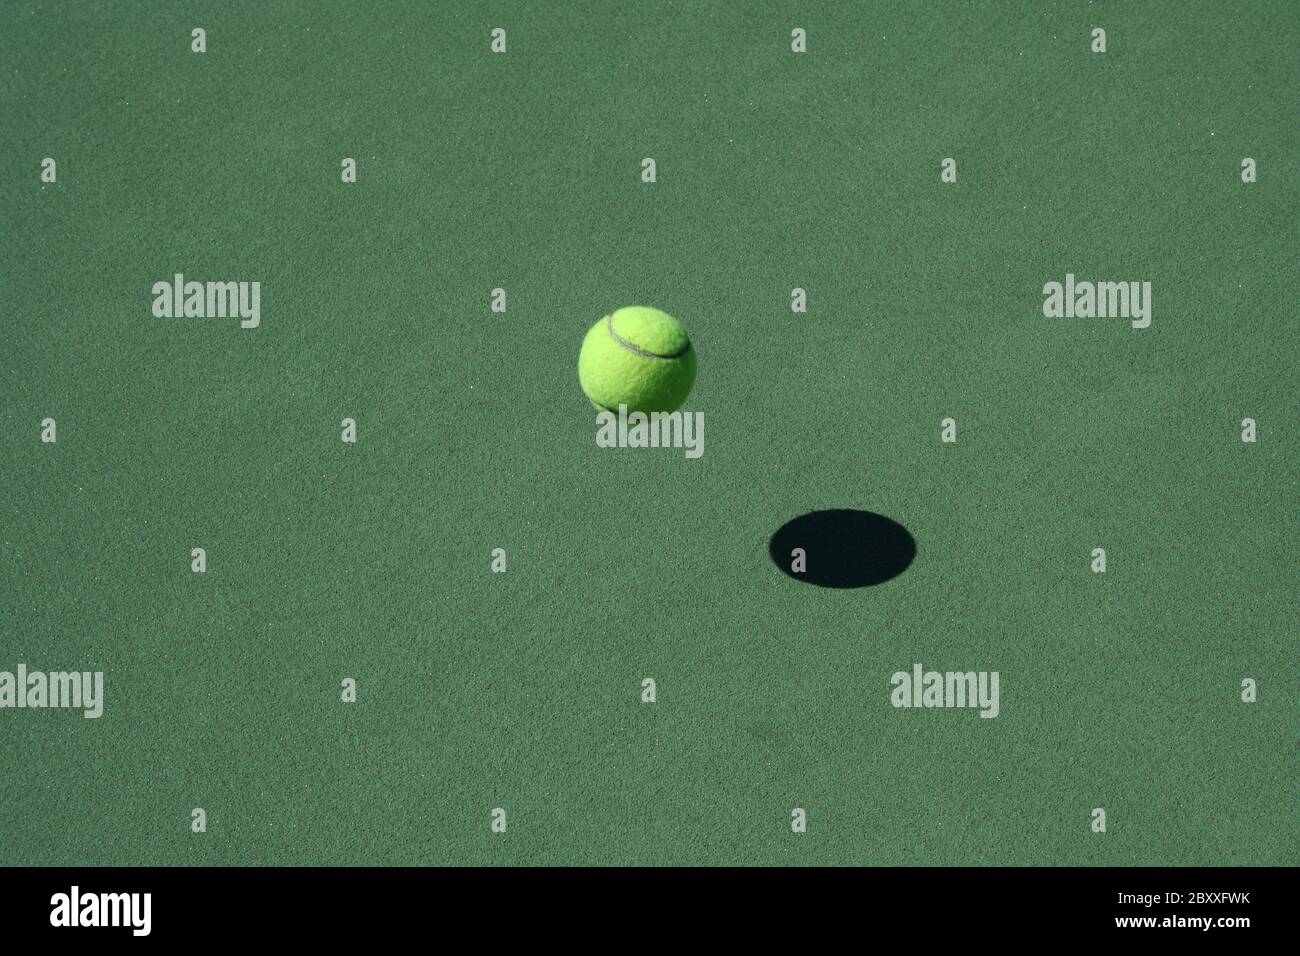 Un centre de tennis vide avec balle rebondissante Banque D'Images